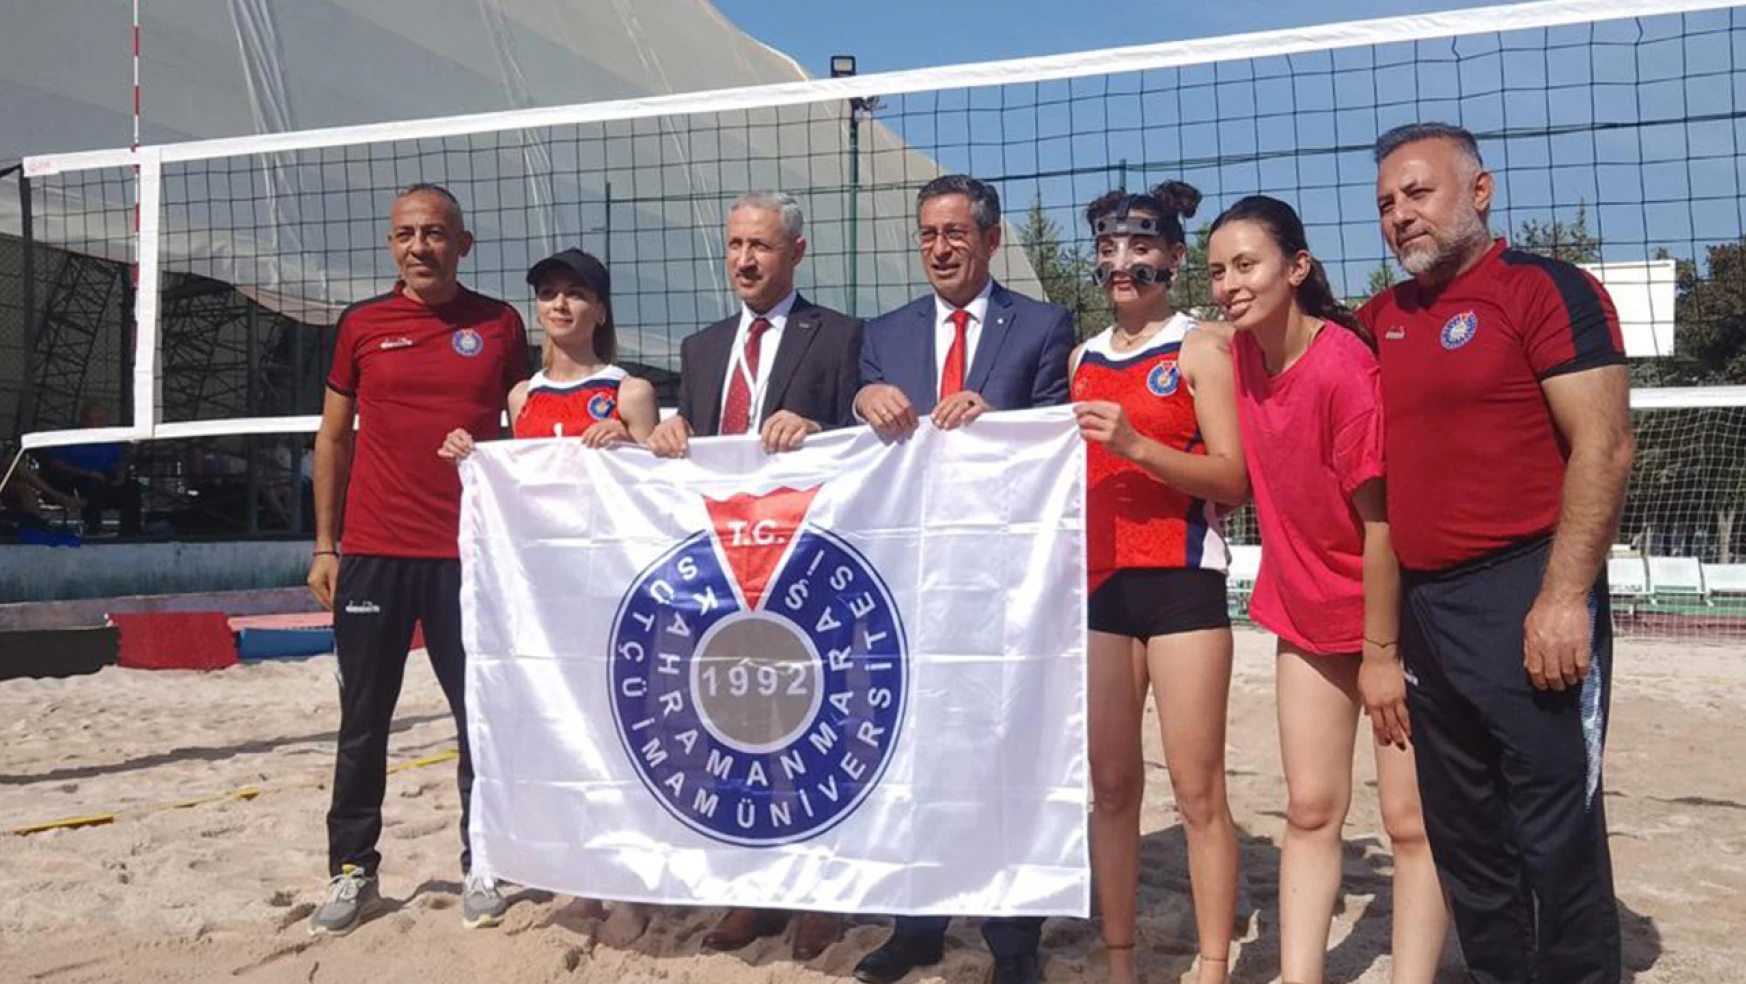 KSÜ Plaj Voleybol Takımlarından gururlandıran başarı